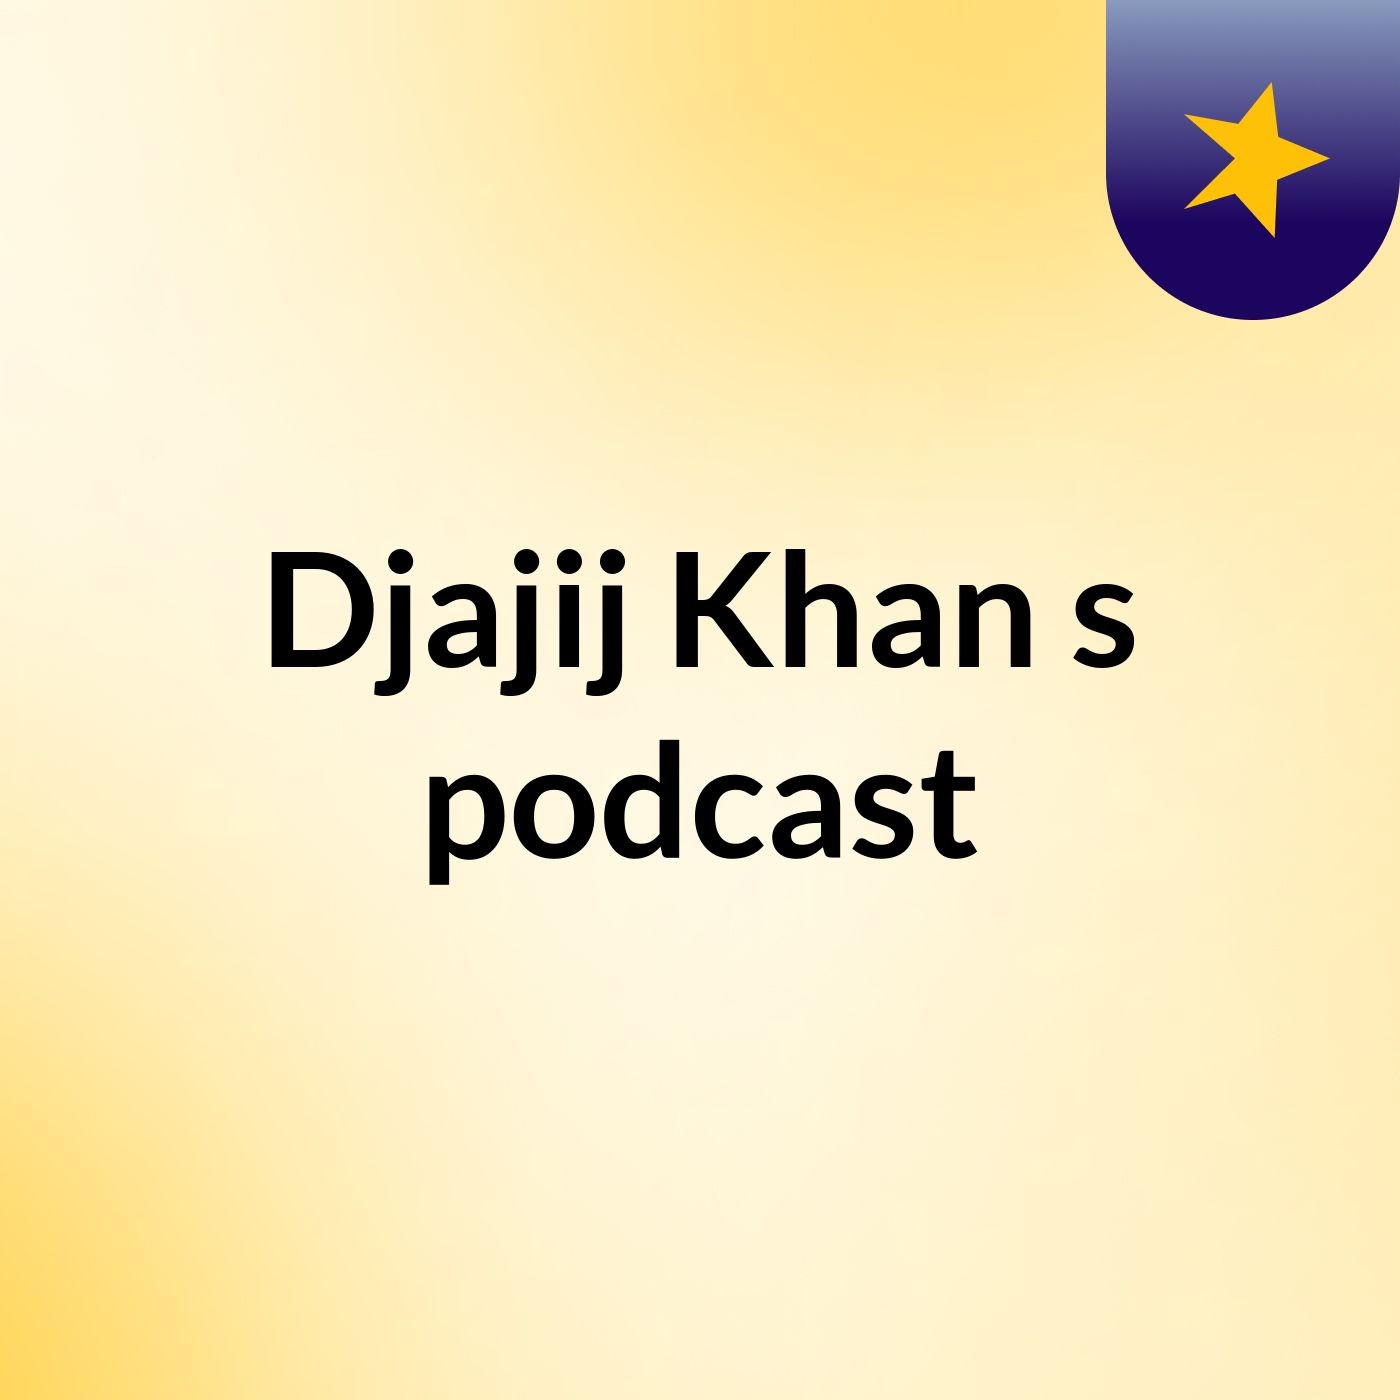 Episode 2 - Djajij Khan's podcast